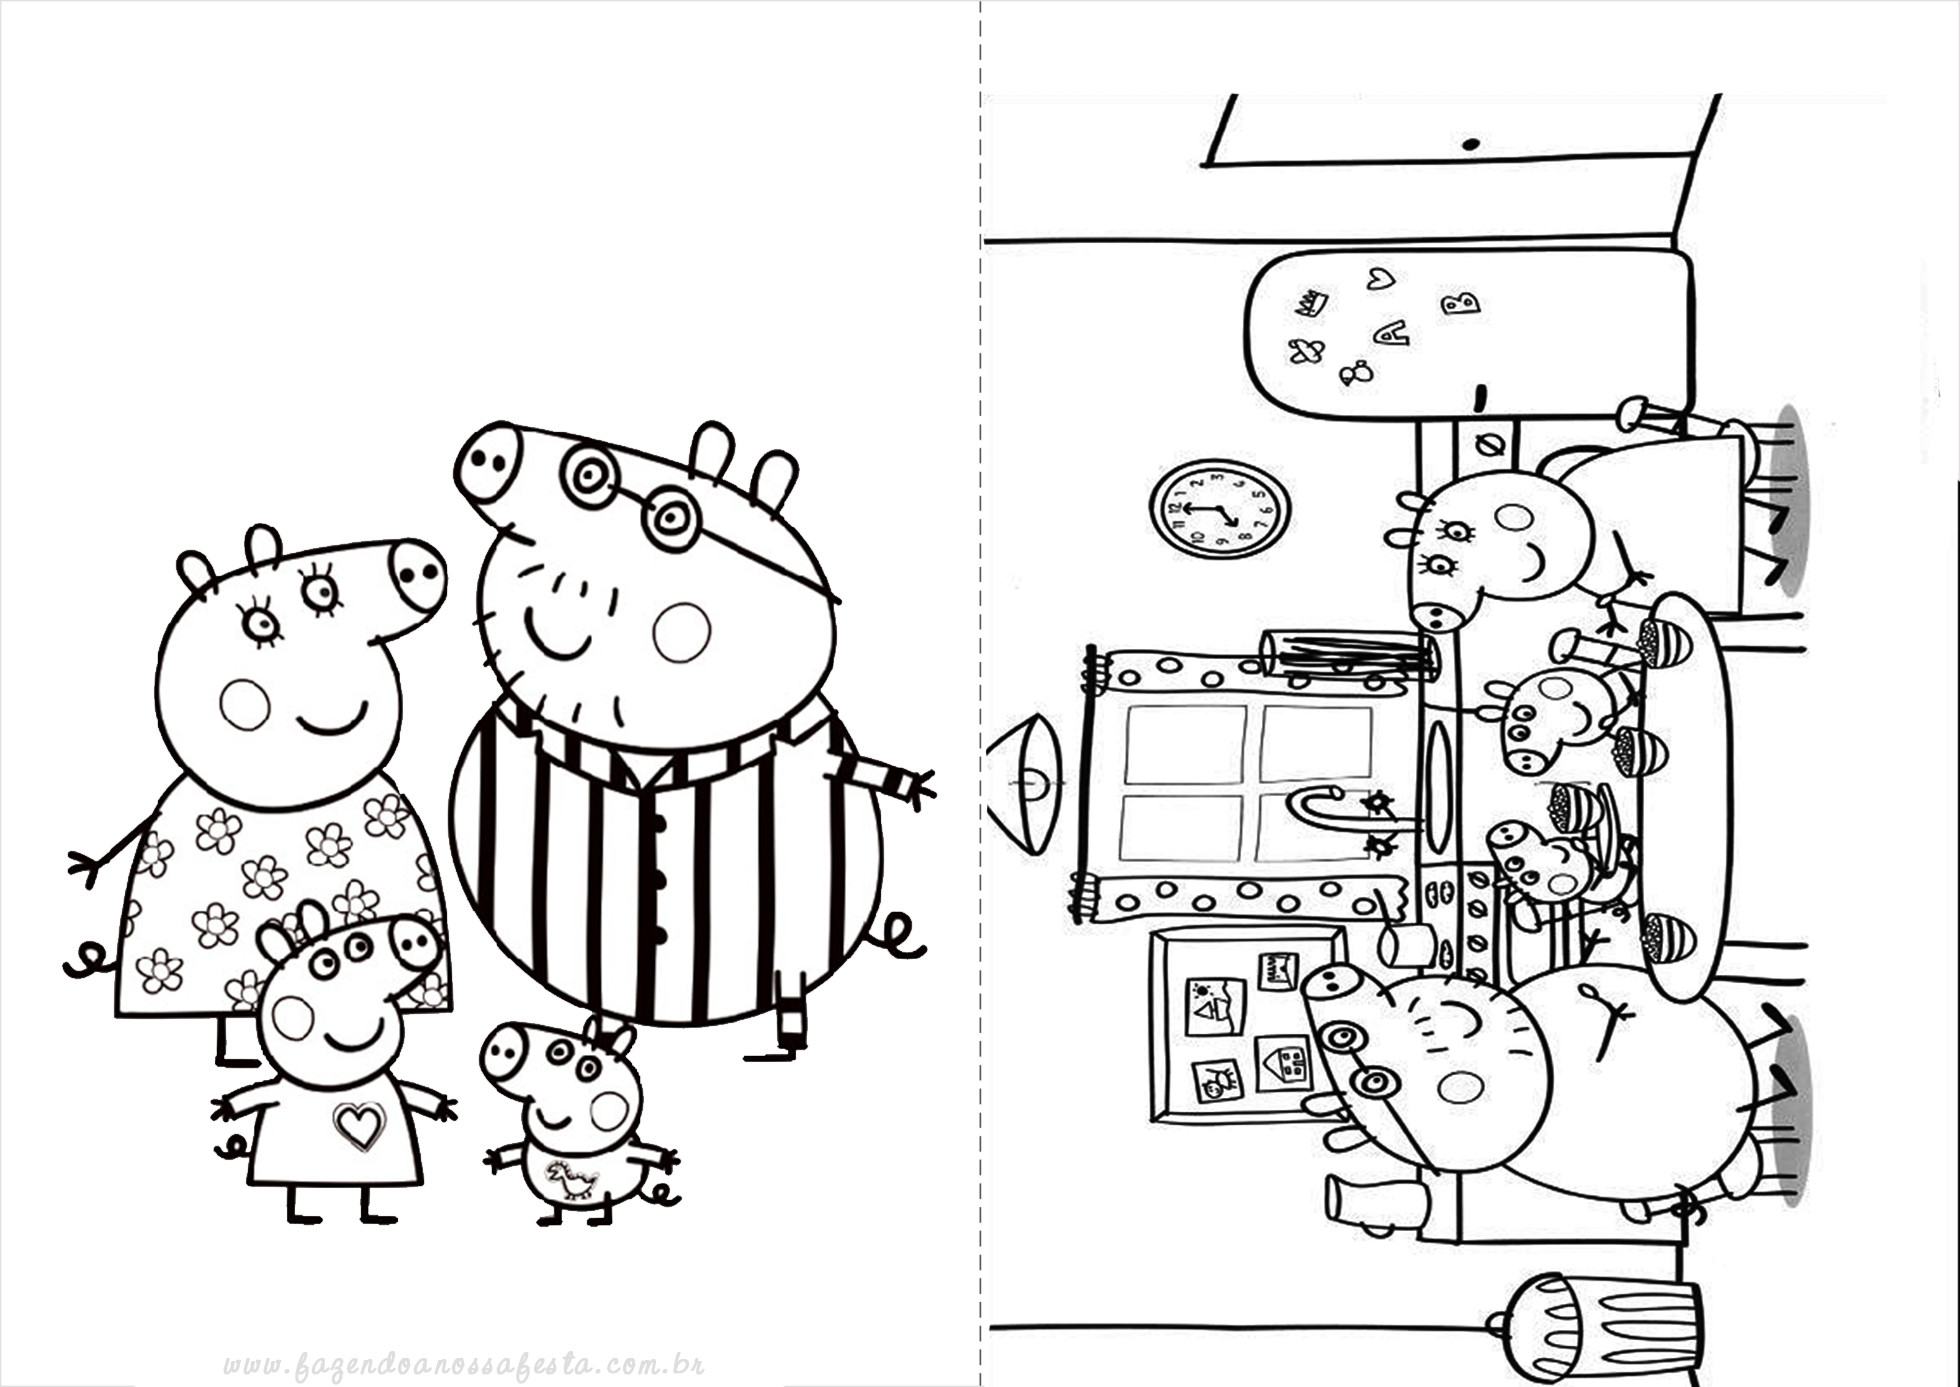 Páginas para colorir Peppa Pig - Imprimir ou baixar grátis